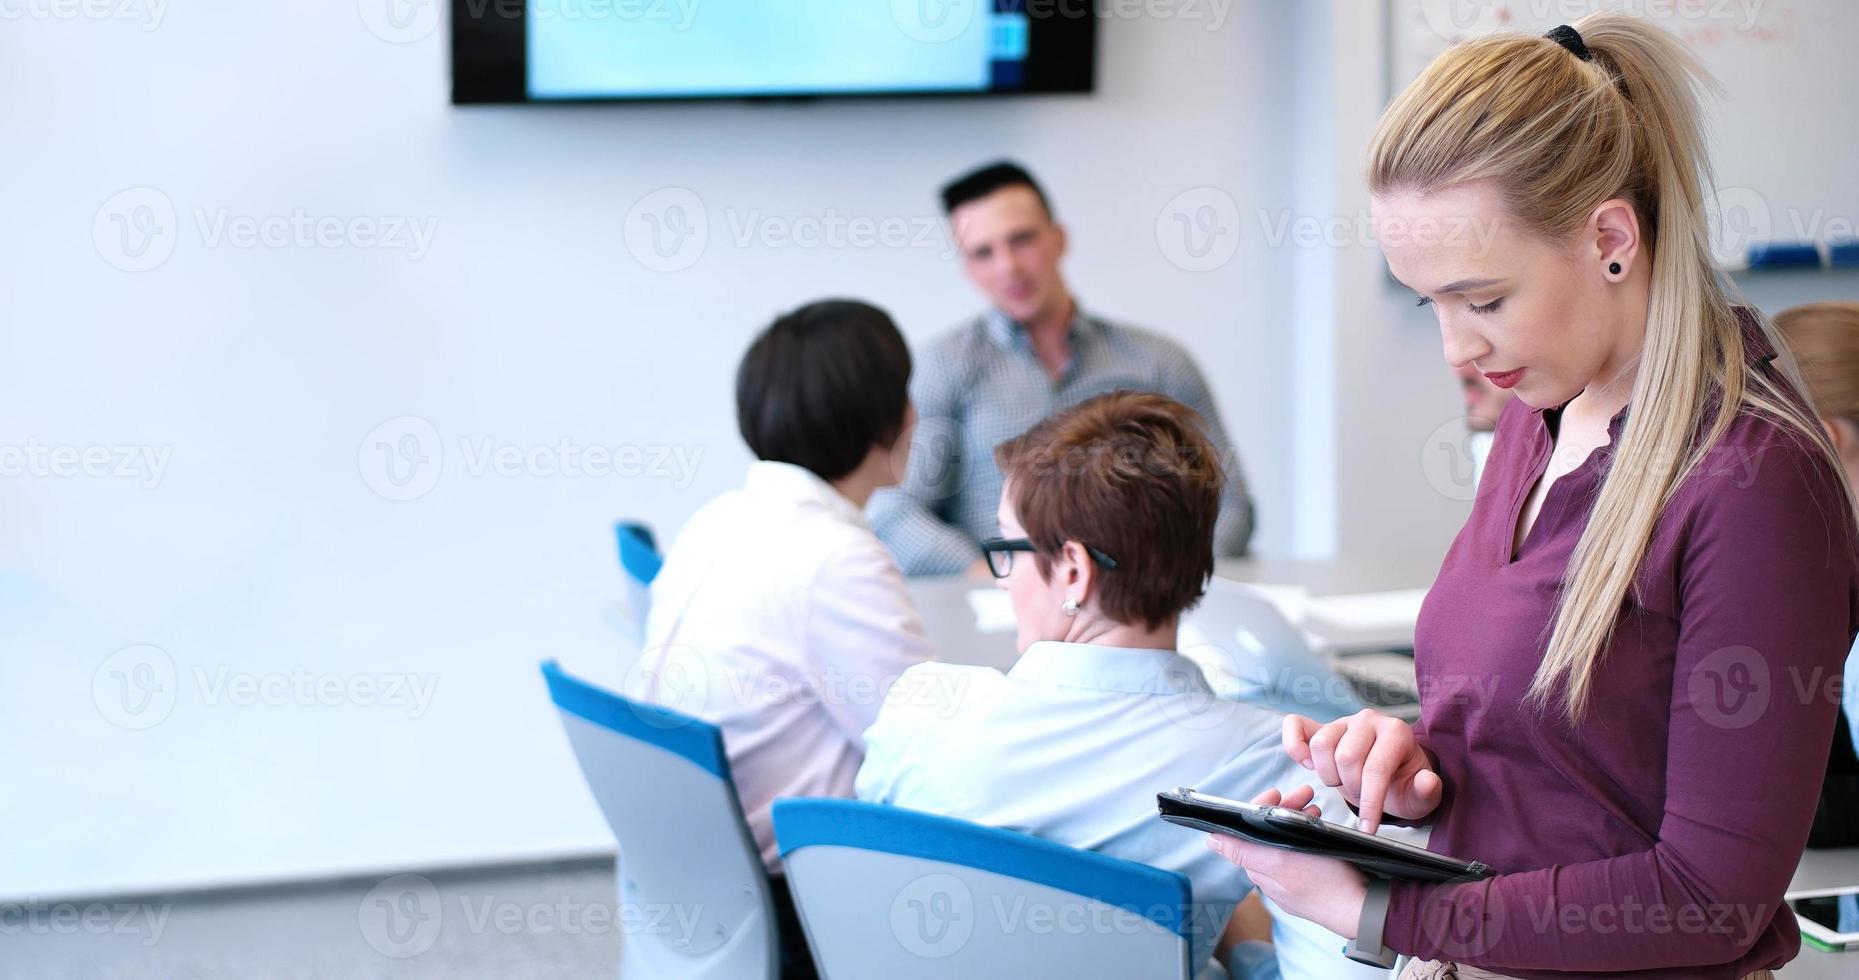 Söt affärskvinna använder sig av läsplatta i kontor byggnad under konferens foto